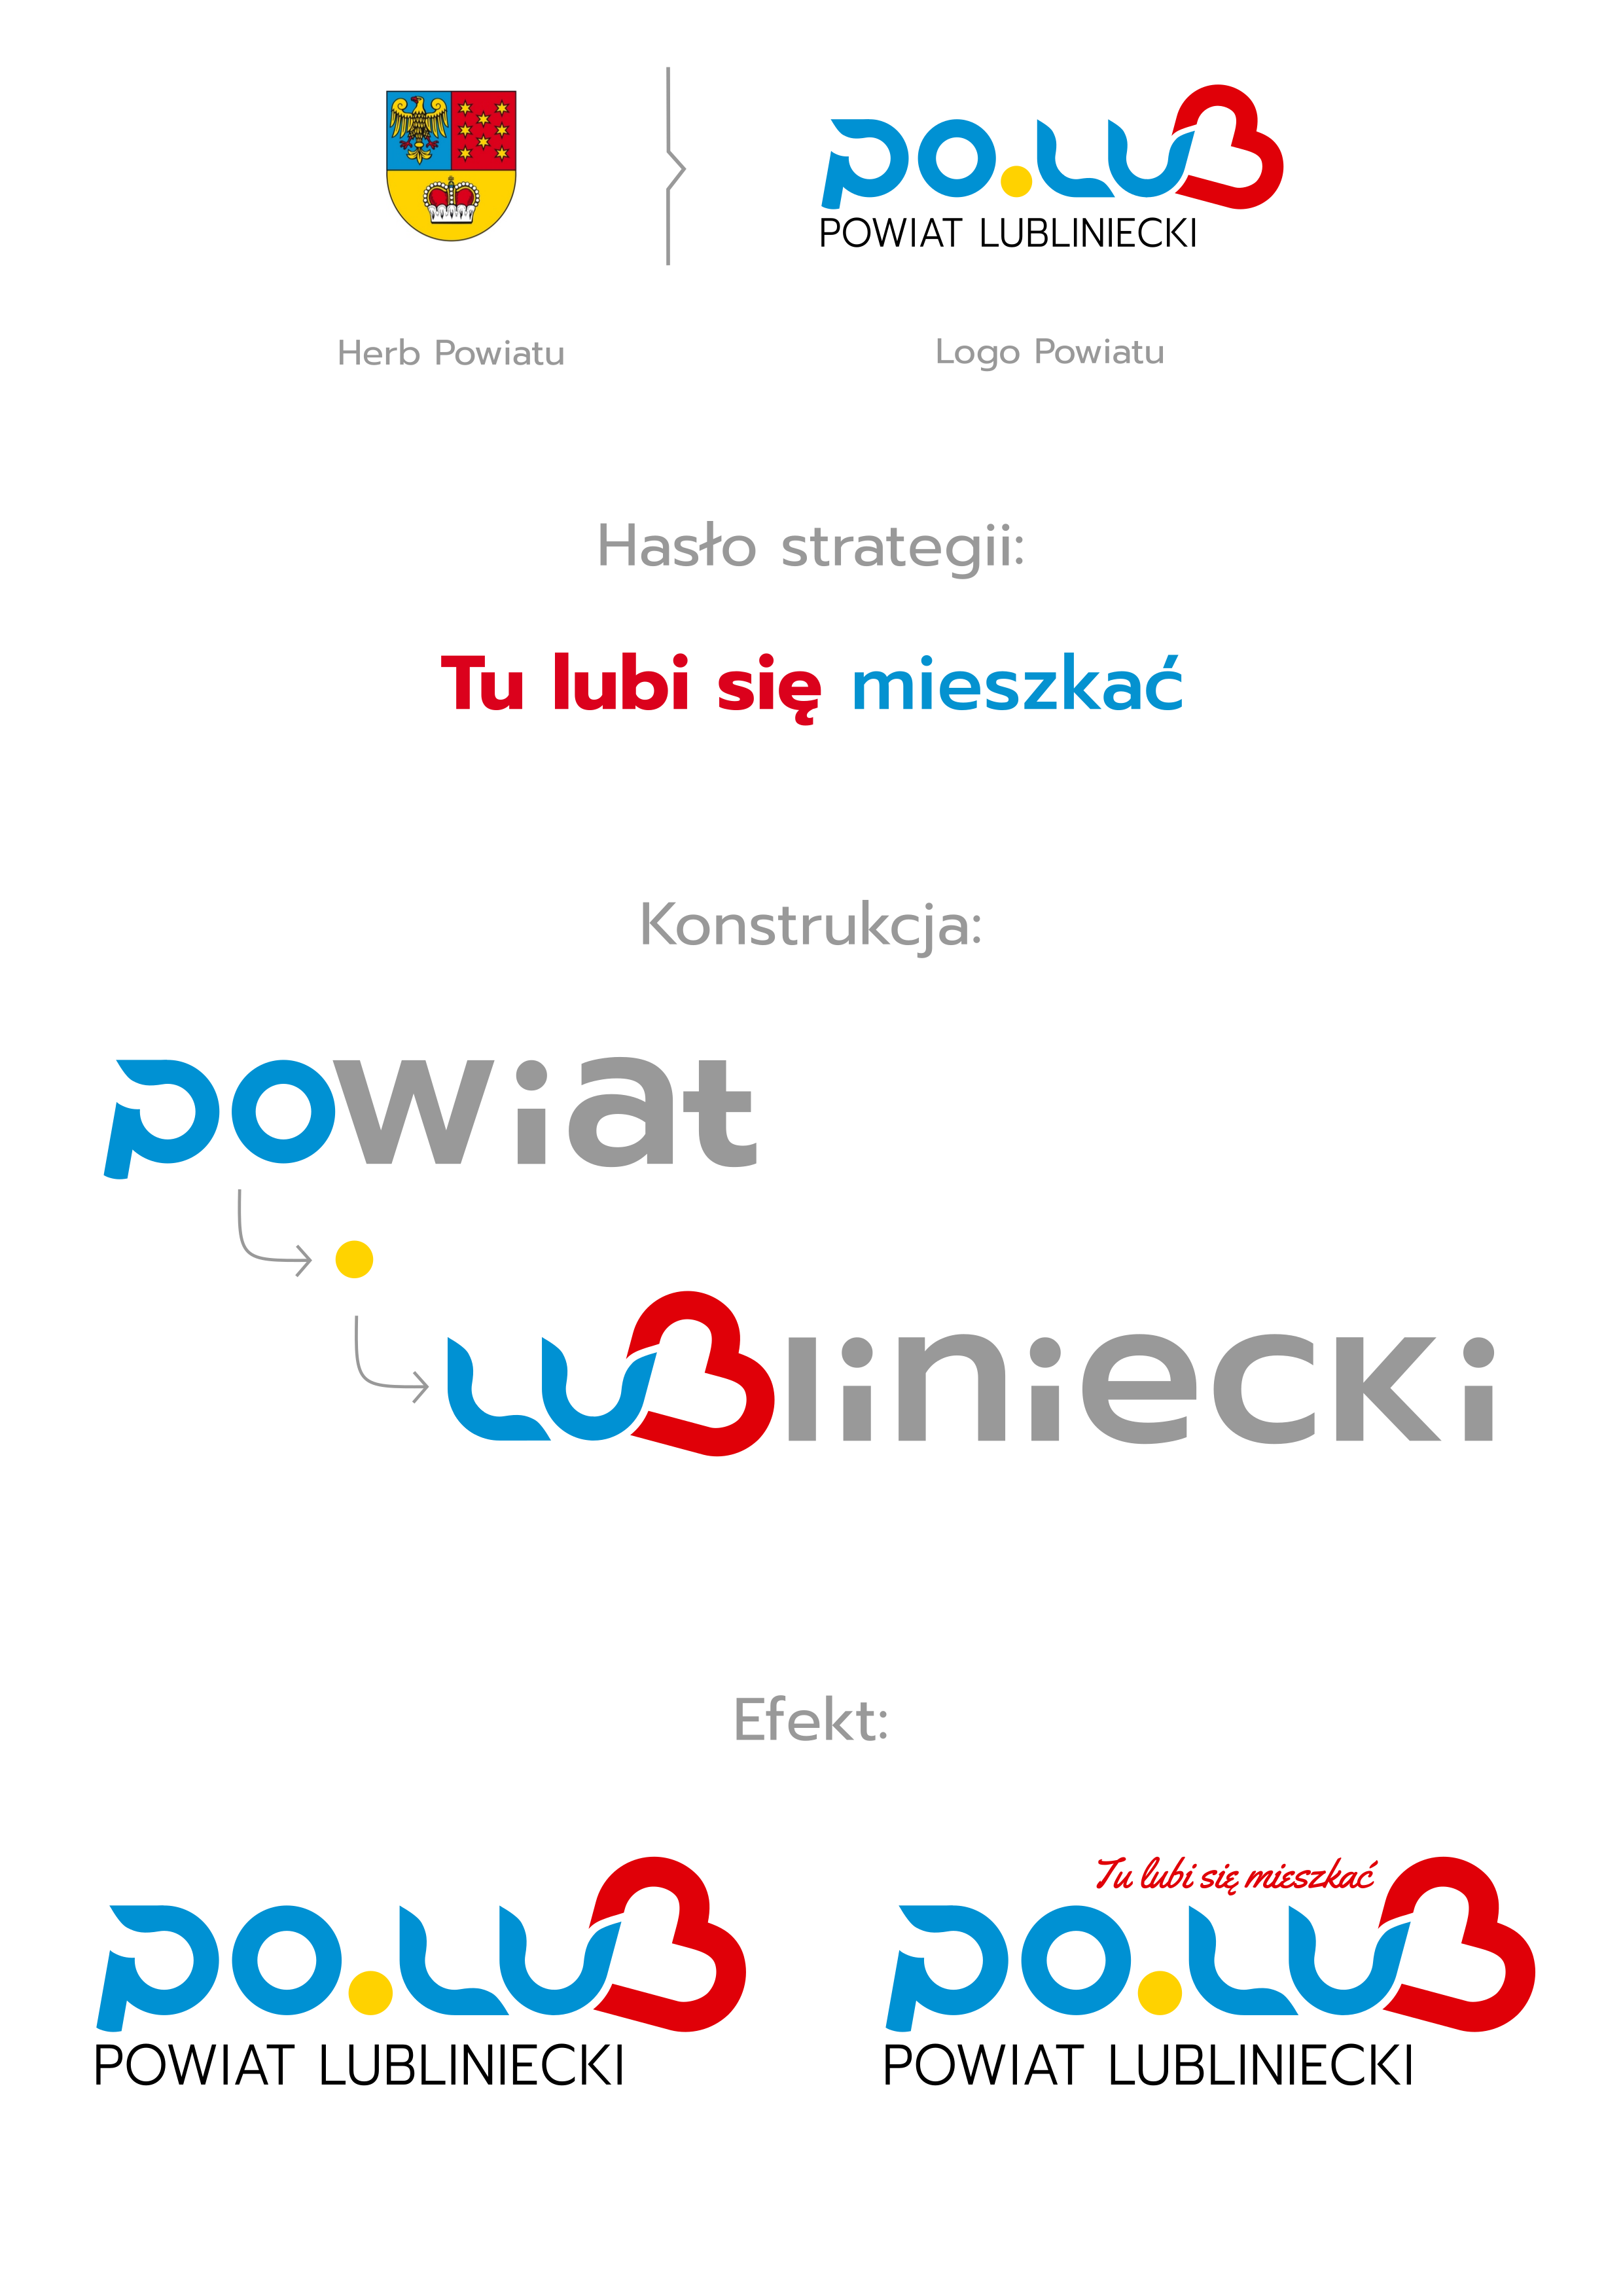 545dd0-logo_powiat_miroslaw_wlodarczyk_powstanie.png